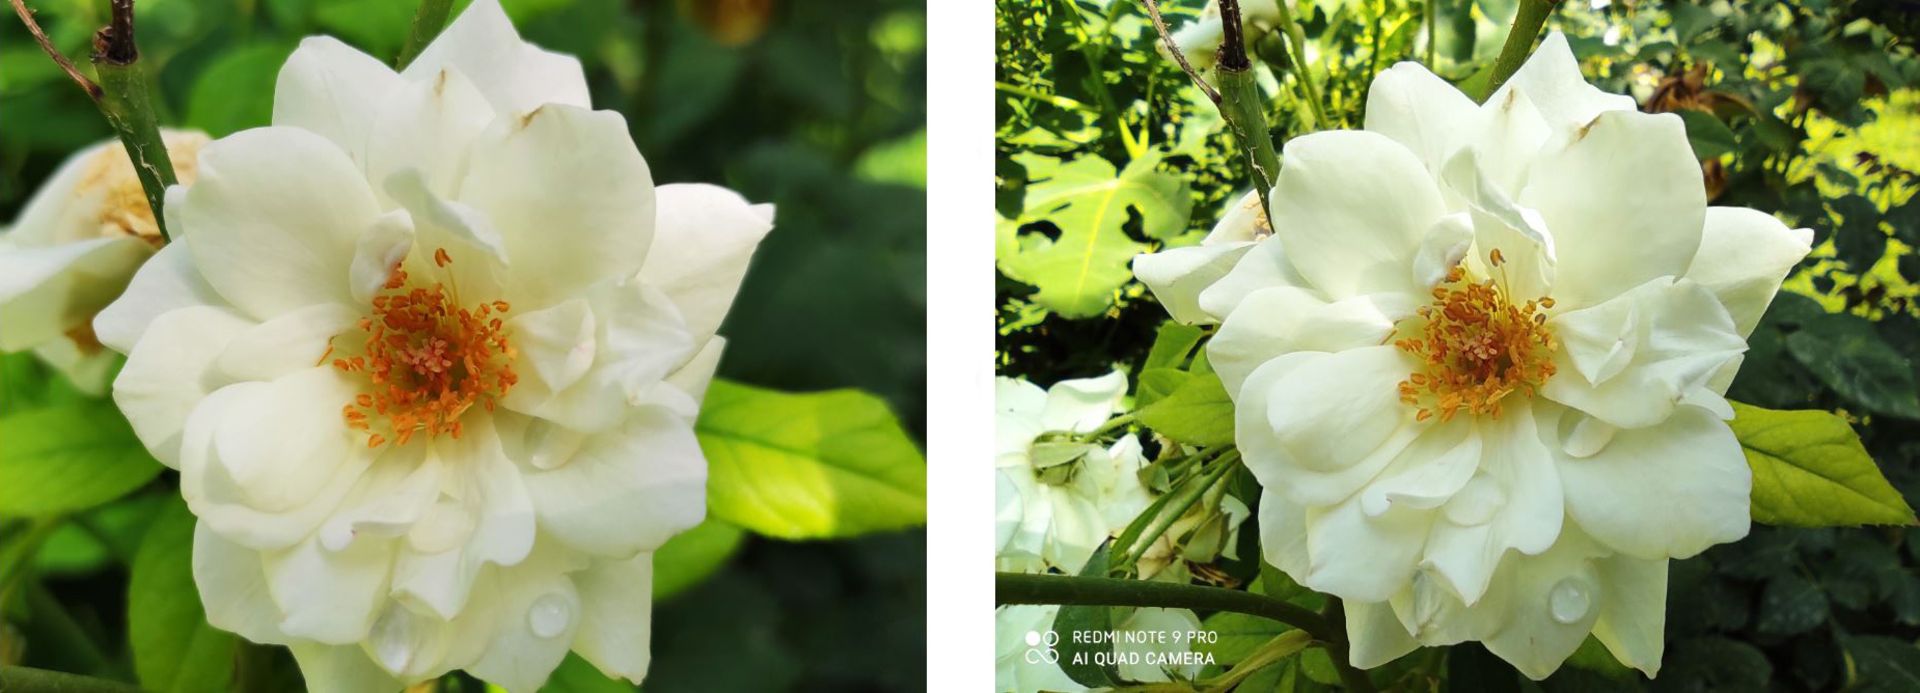 مرجع متخصصين ايران عكس گل ماكرو ردمي نوت ۹ پرو در برابر عكس گل وايد